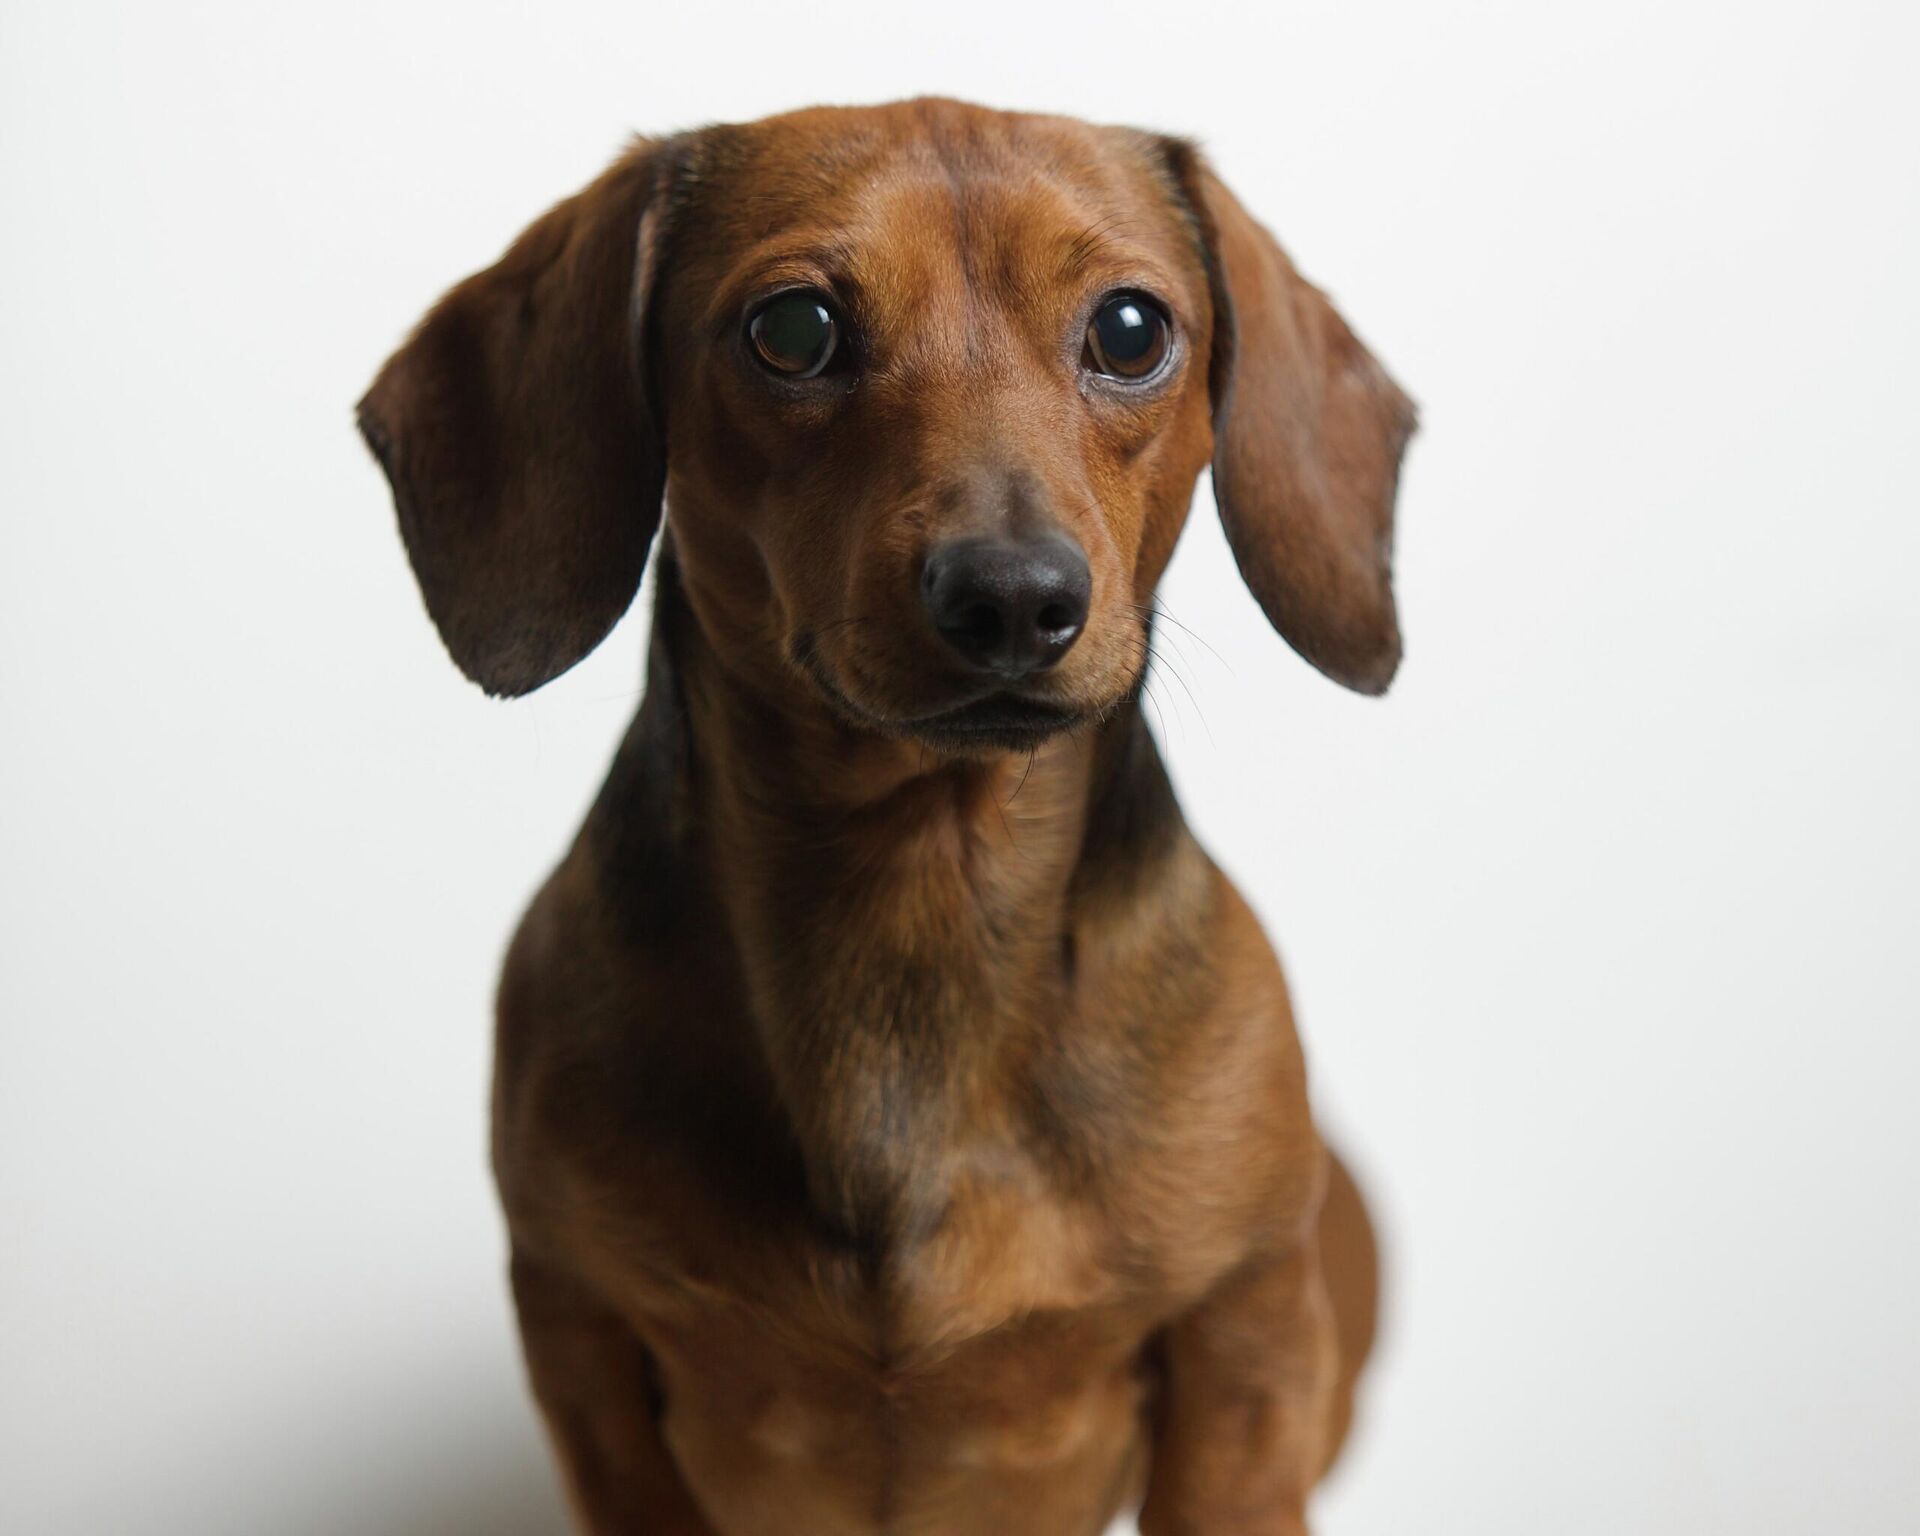 Un perro de la raza dachshund - Sputnik Mundo, 1920, 20.01.2022